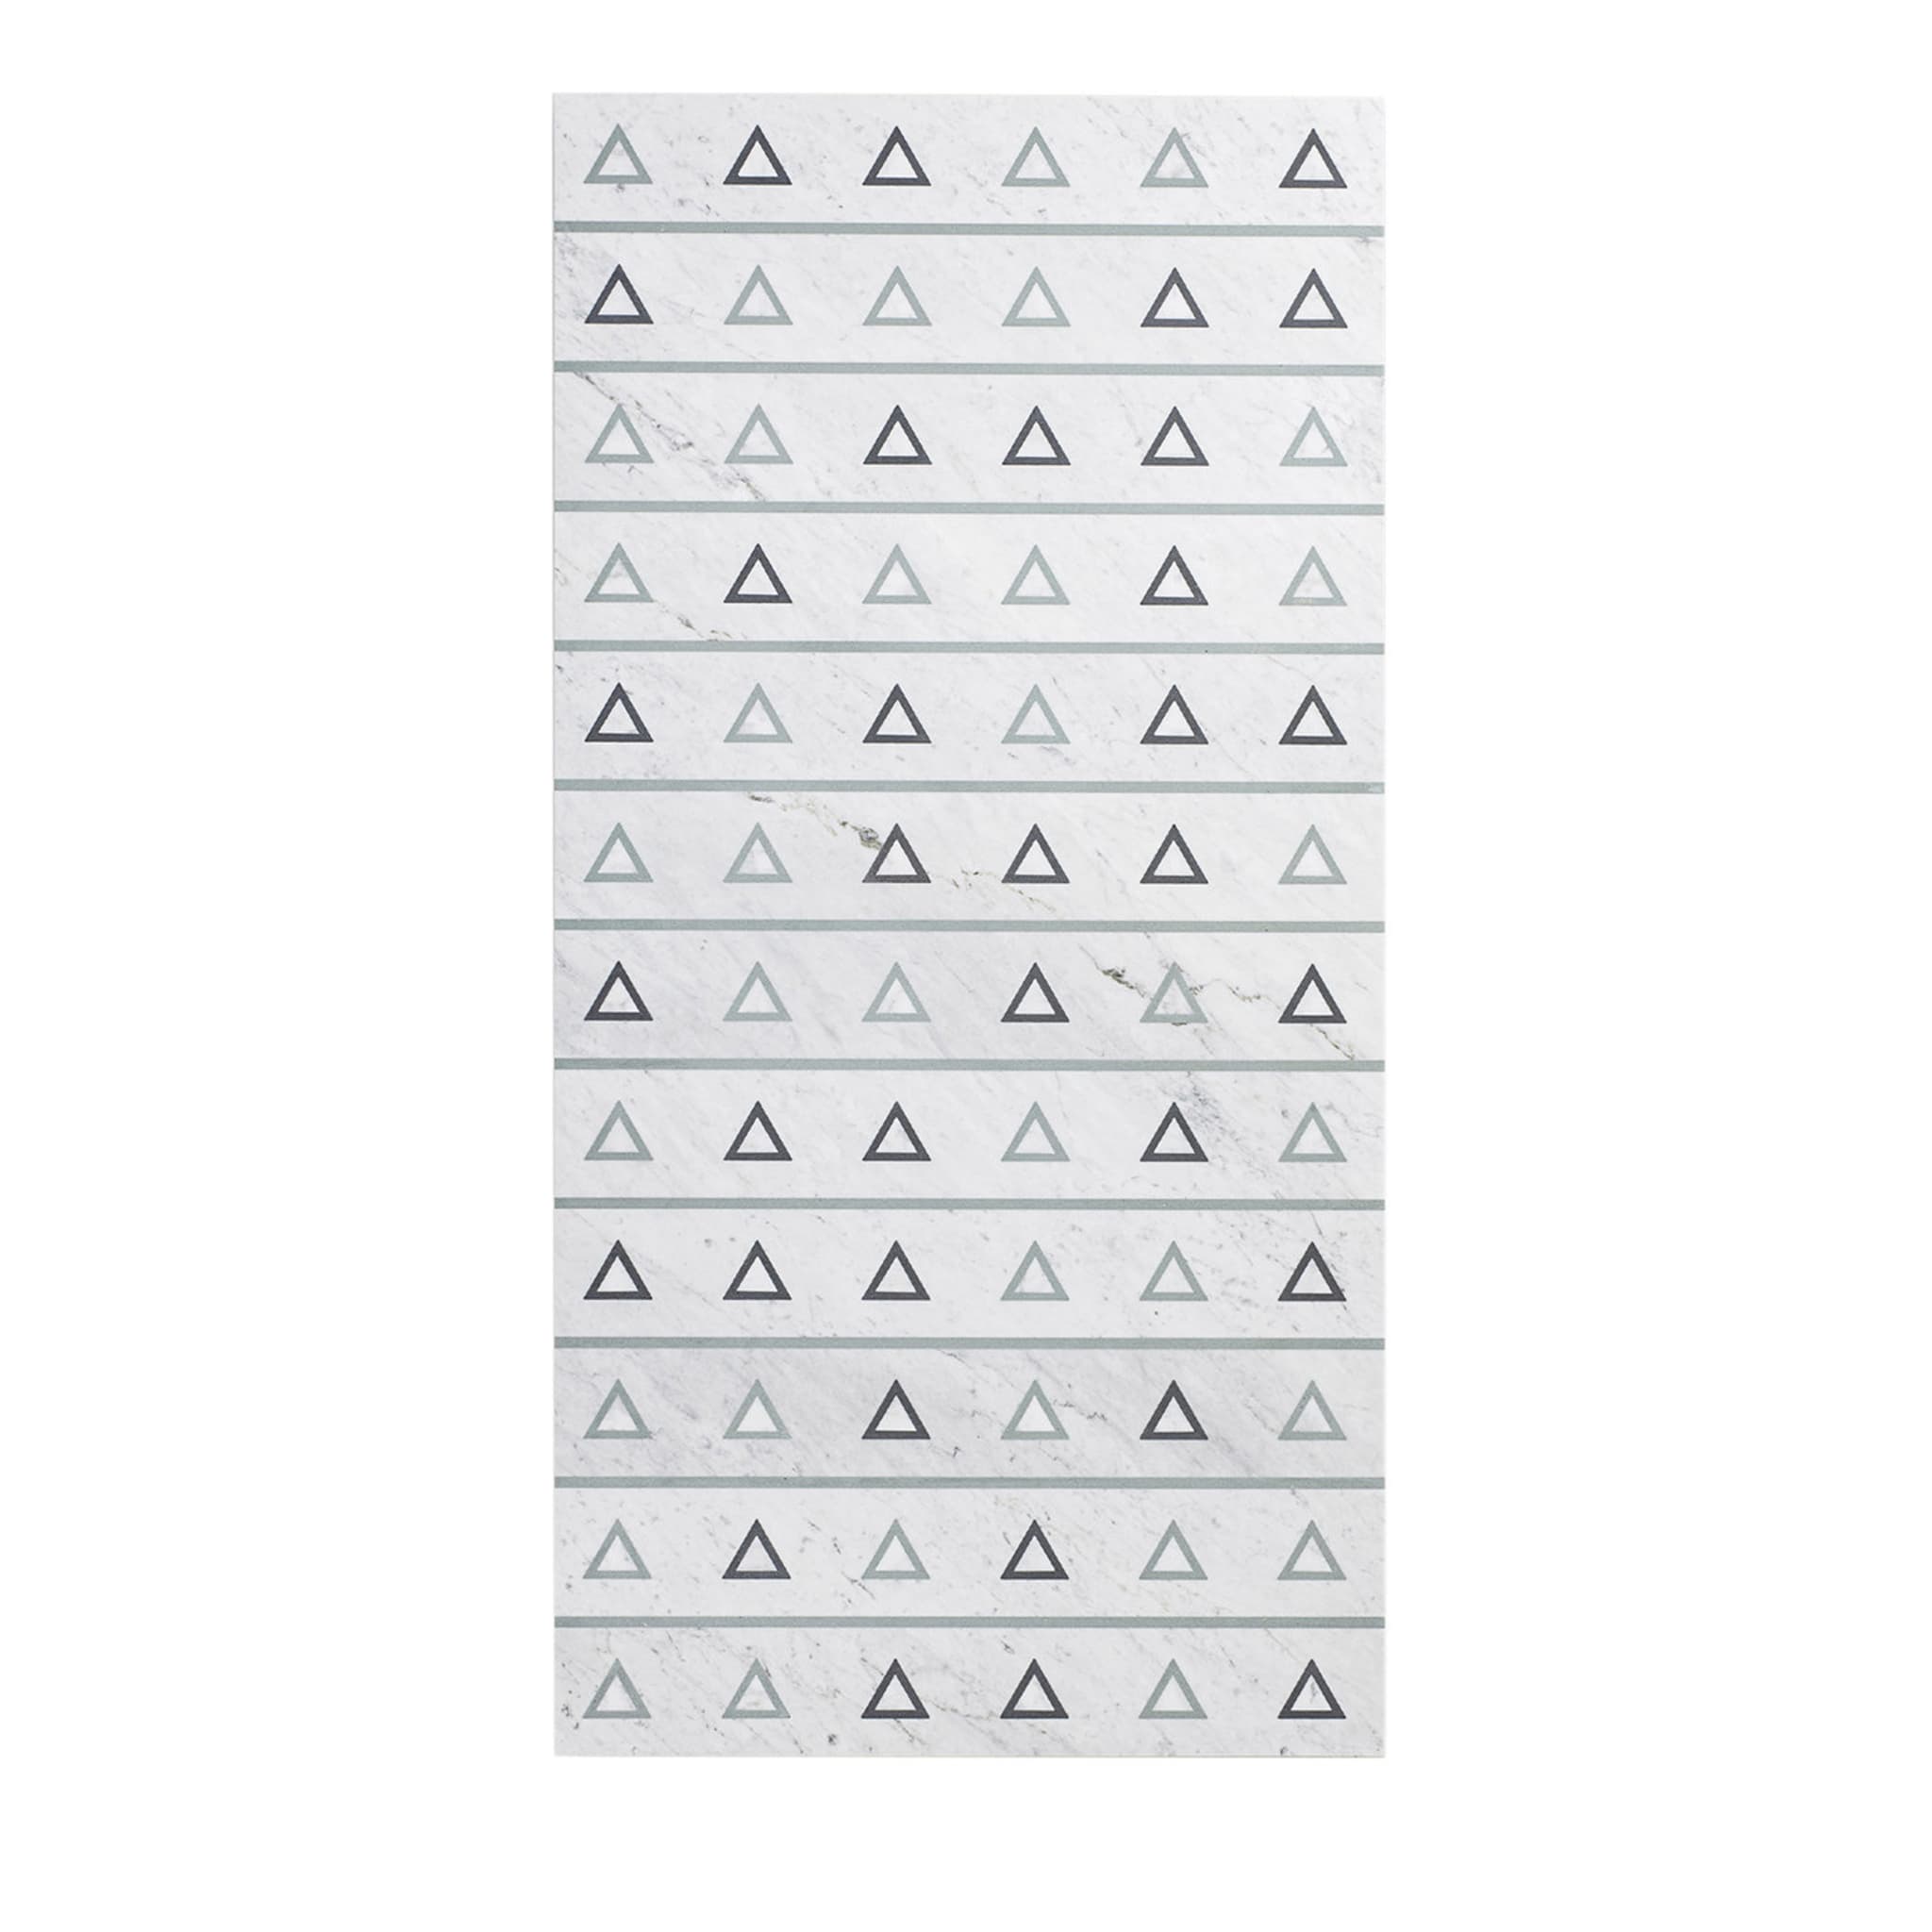 Standardgeometrien Dreiecke Marmortafel von David/Nicolas - Hauptansicht